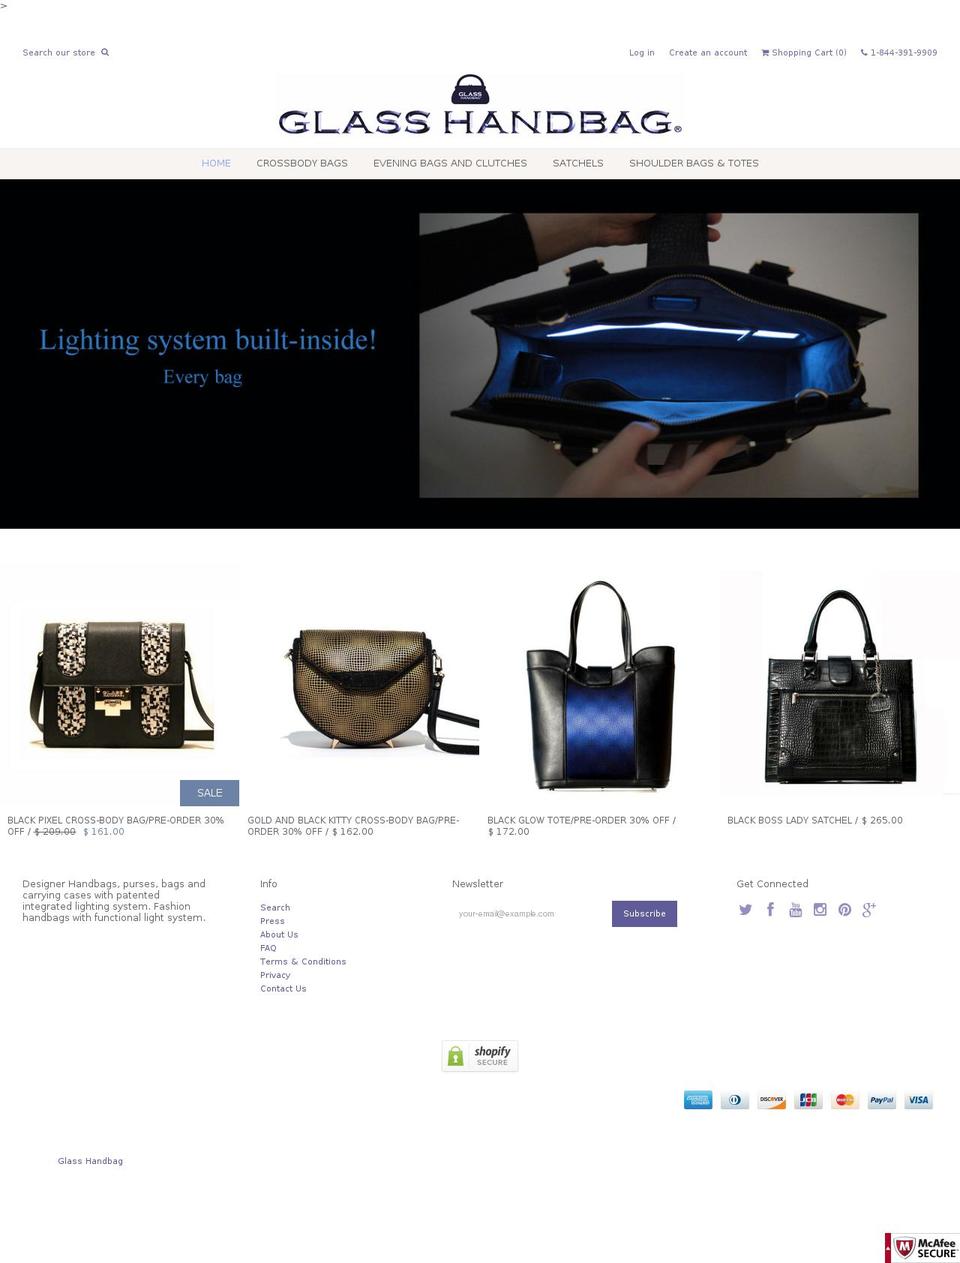 Weekend Shopify theme site example glass-handbag.com